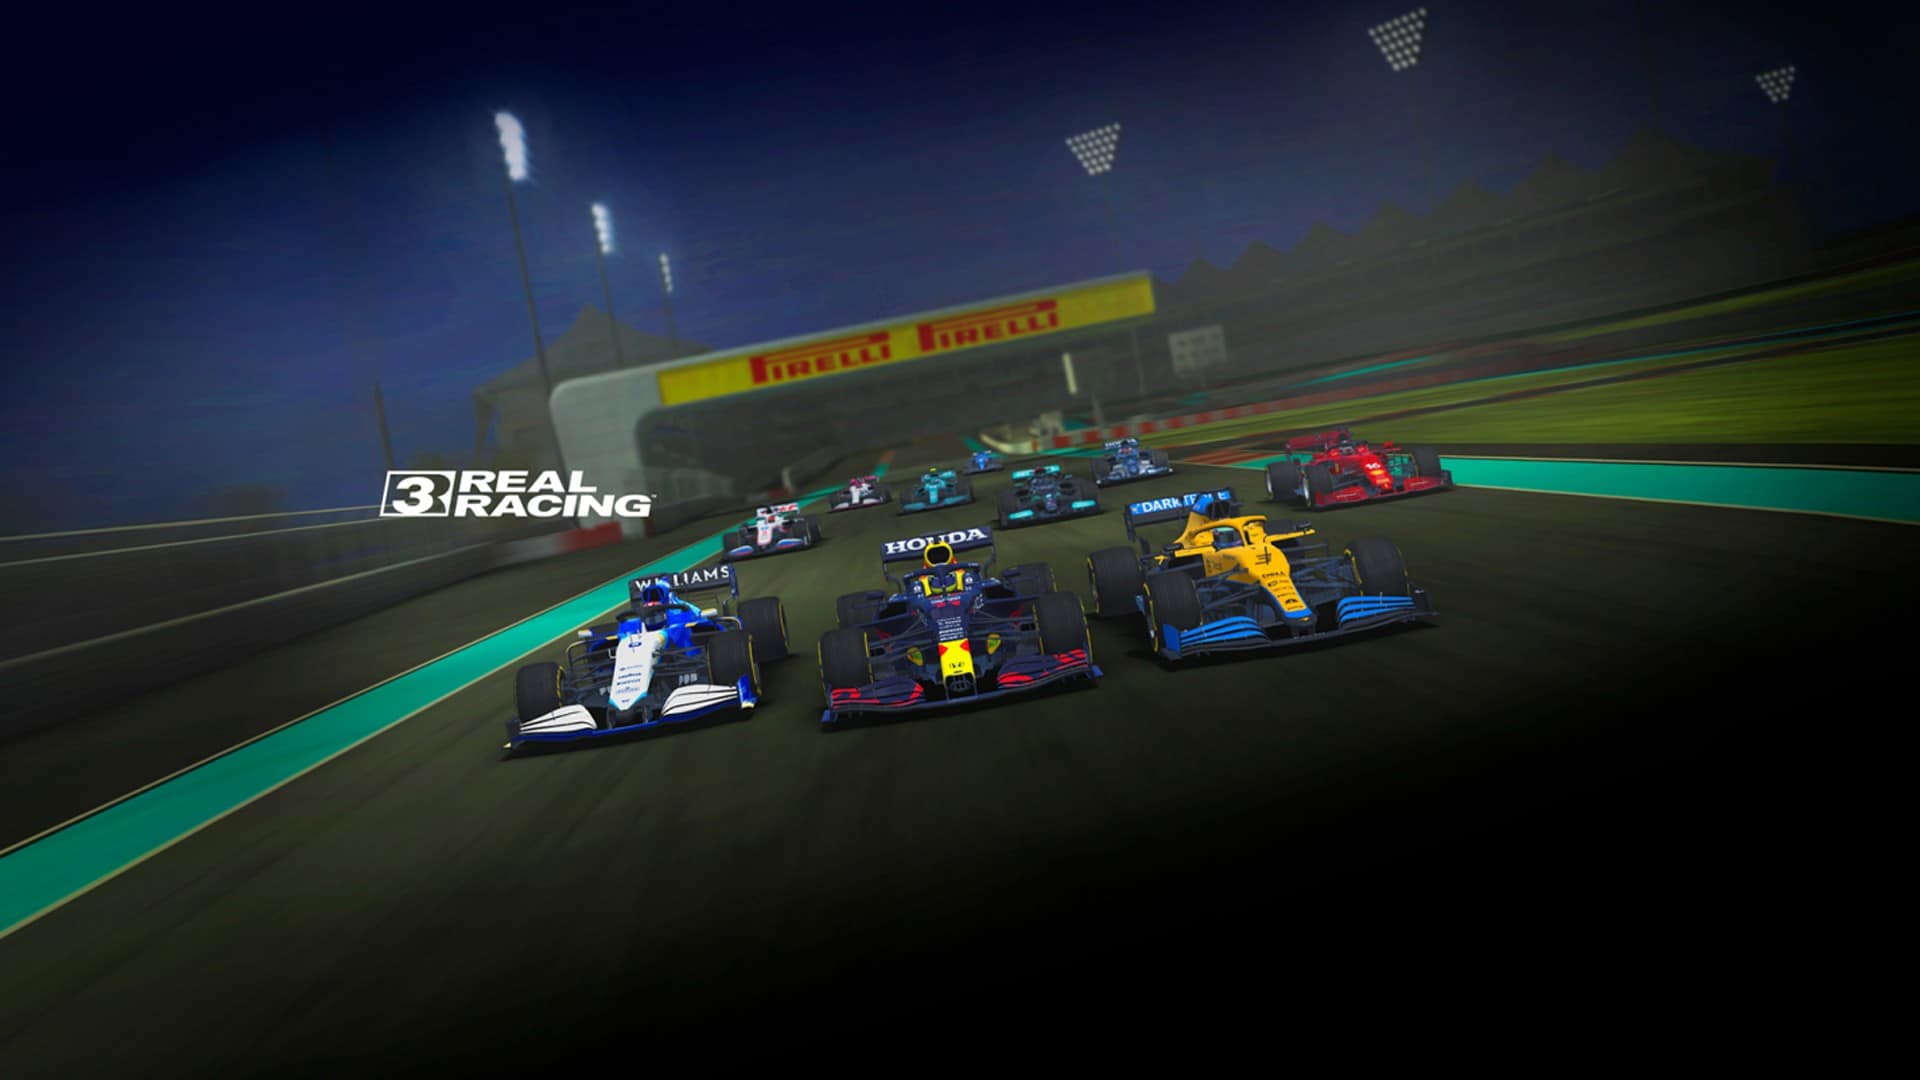 Real Racing 3 adds 2021 Formula 1 in upcoming Season 3 9.6 update